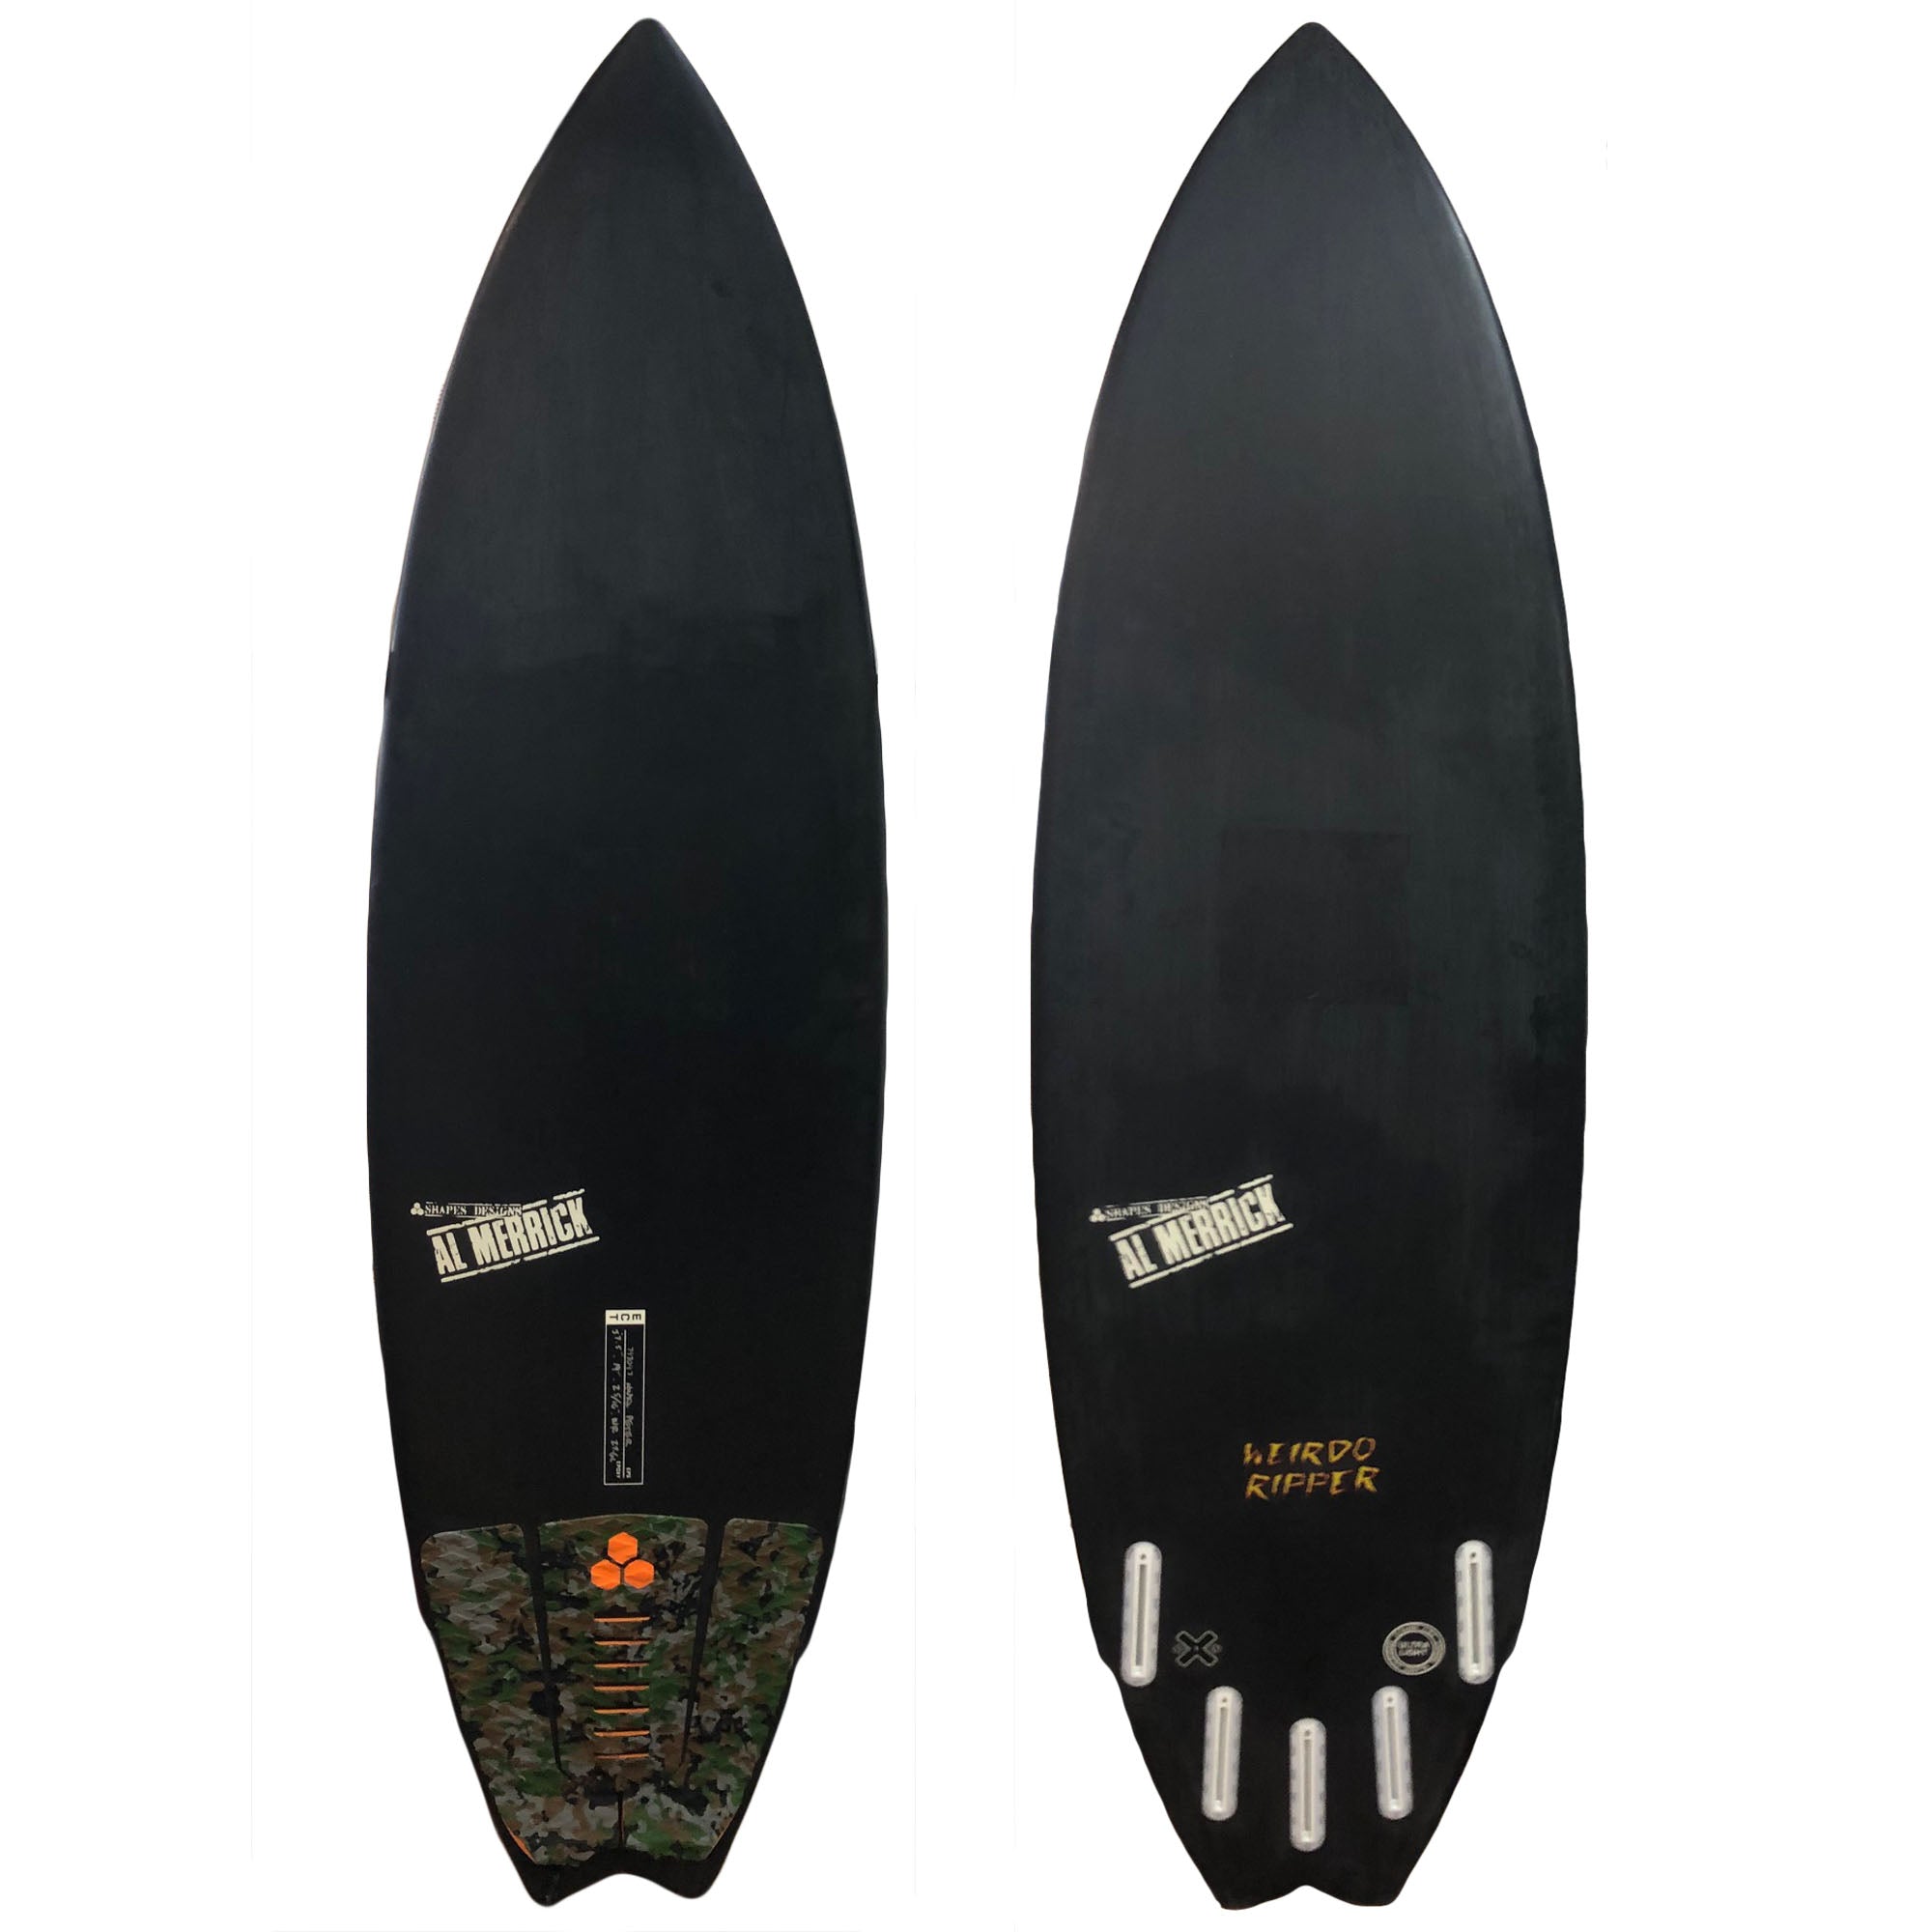 Channel Islands Weirdo Ripper ECT 5'7 1/2" Consignment Surfboard